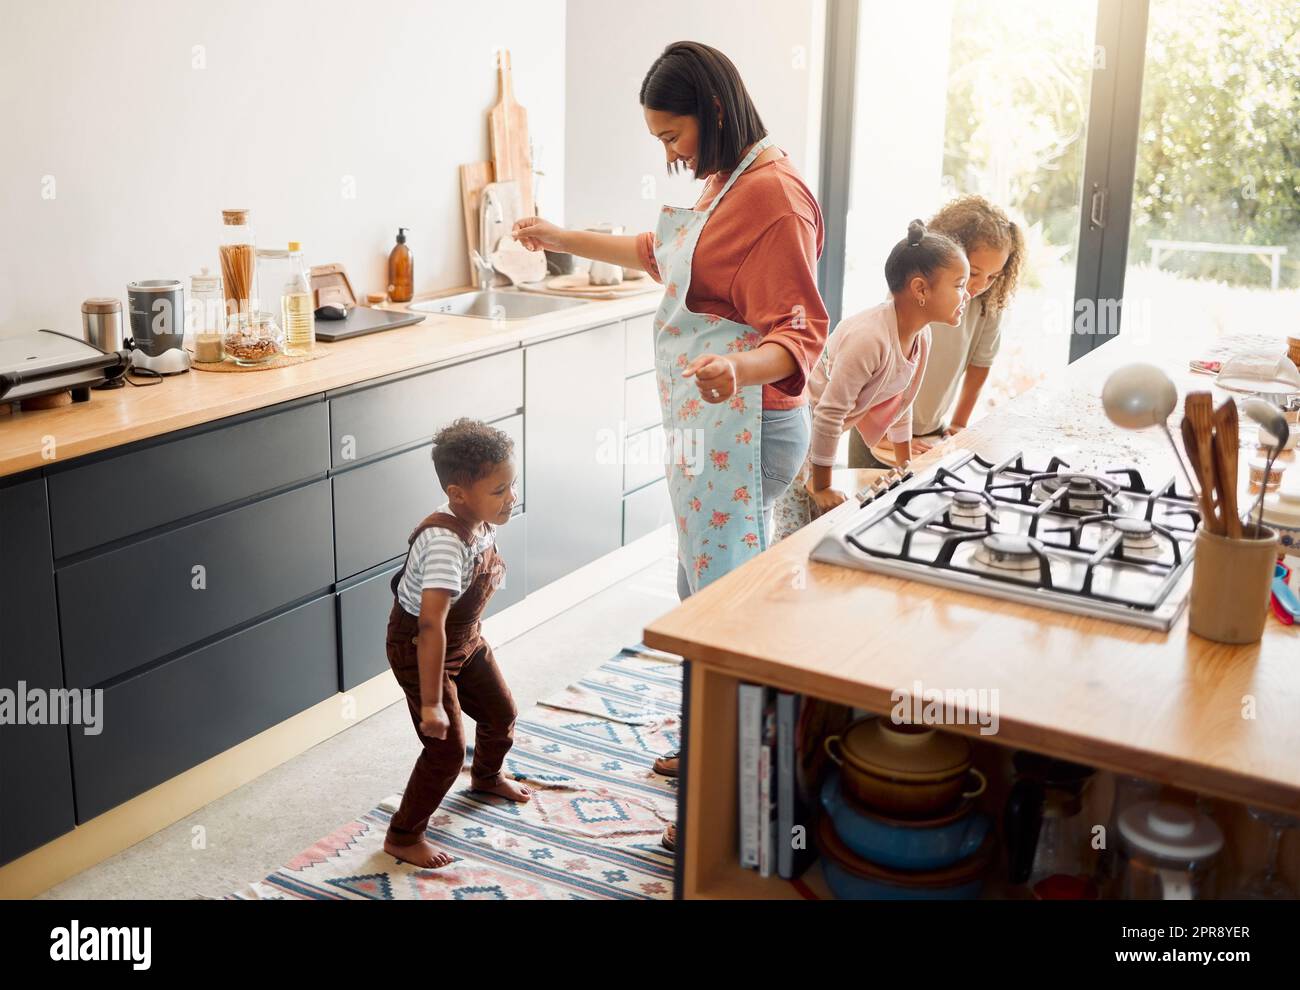 Eine glückliche Mischrasse aus fünf Personen, die zusammen kochen und Spaß in einer Küche haben. Liebe schwarze alleinerziehende Eltern, die sich mit ihren Kindern verbinden und ihnen häusliche Fähigkeiten zu Hause beibringen Stockfoto